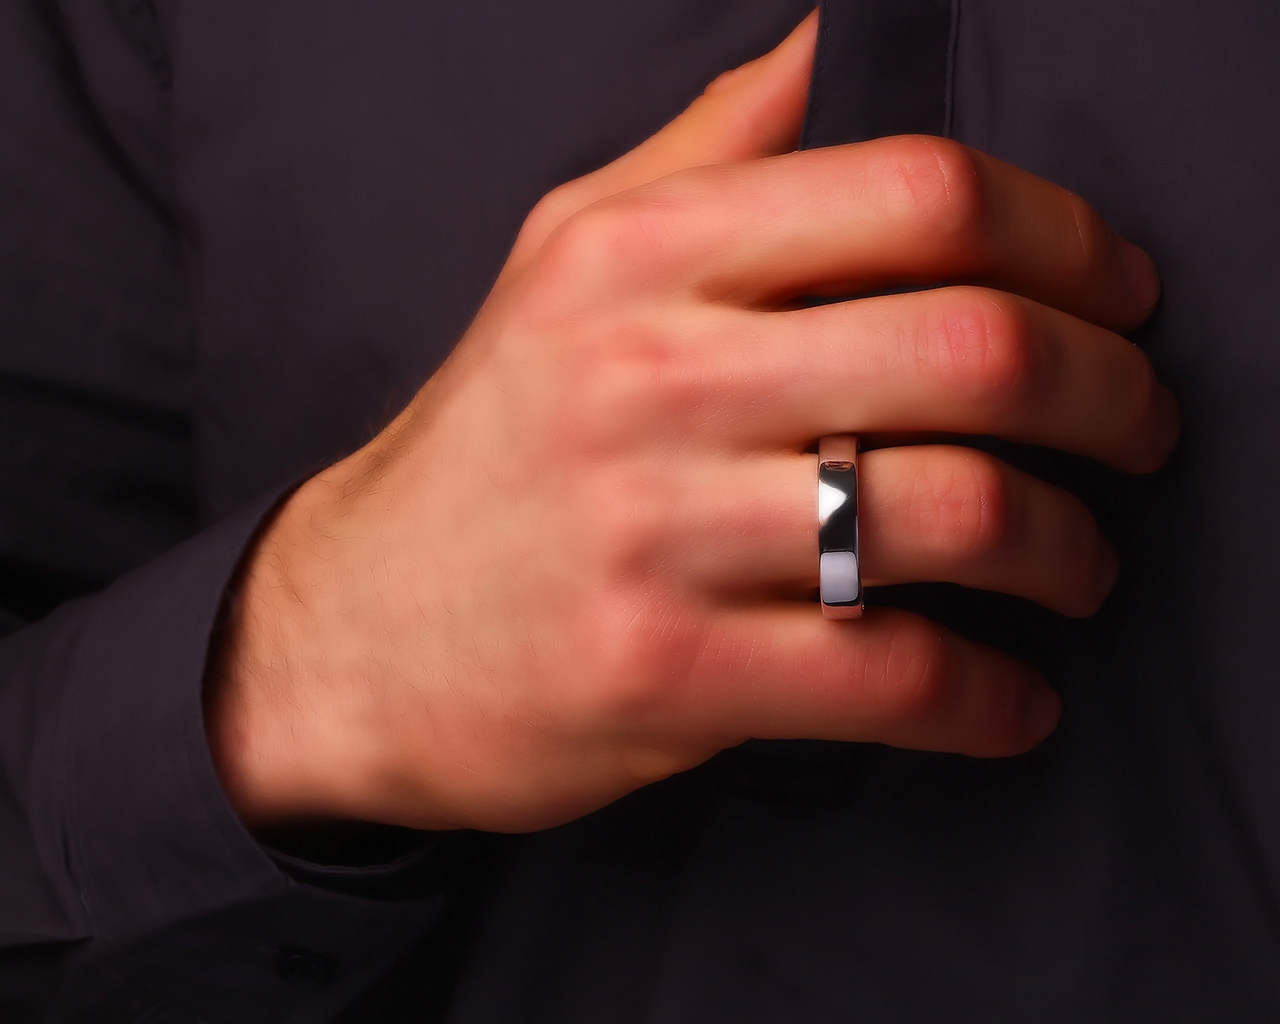 Мужское золотое кольцо с бриллиантами 0.22ct